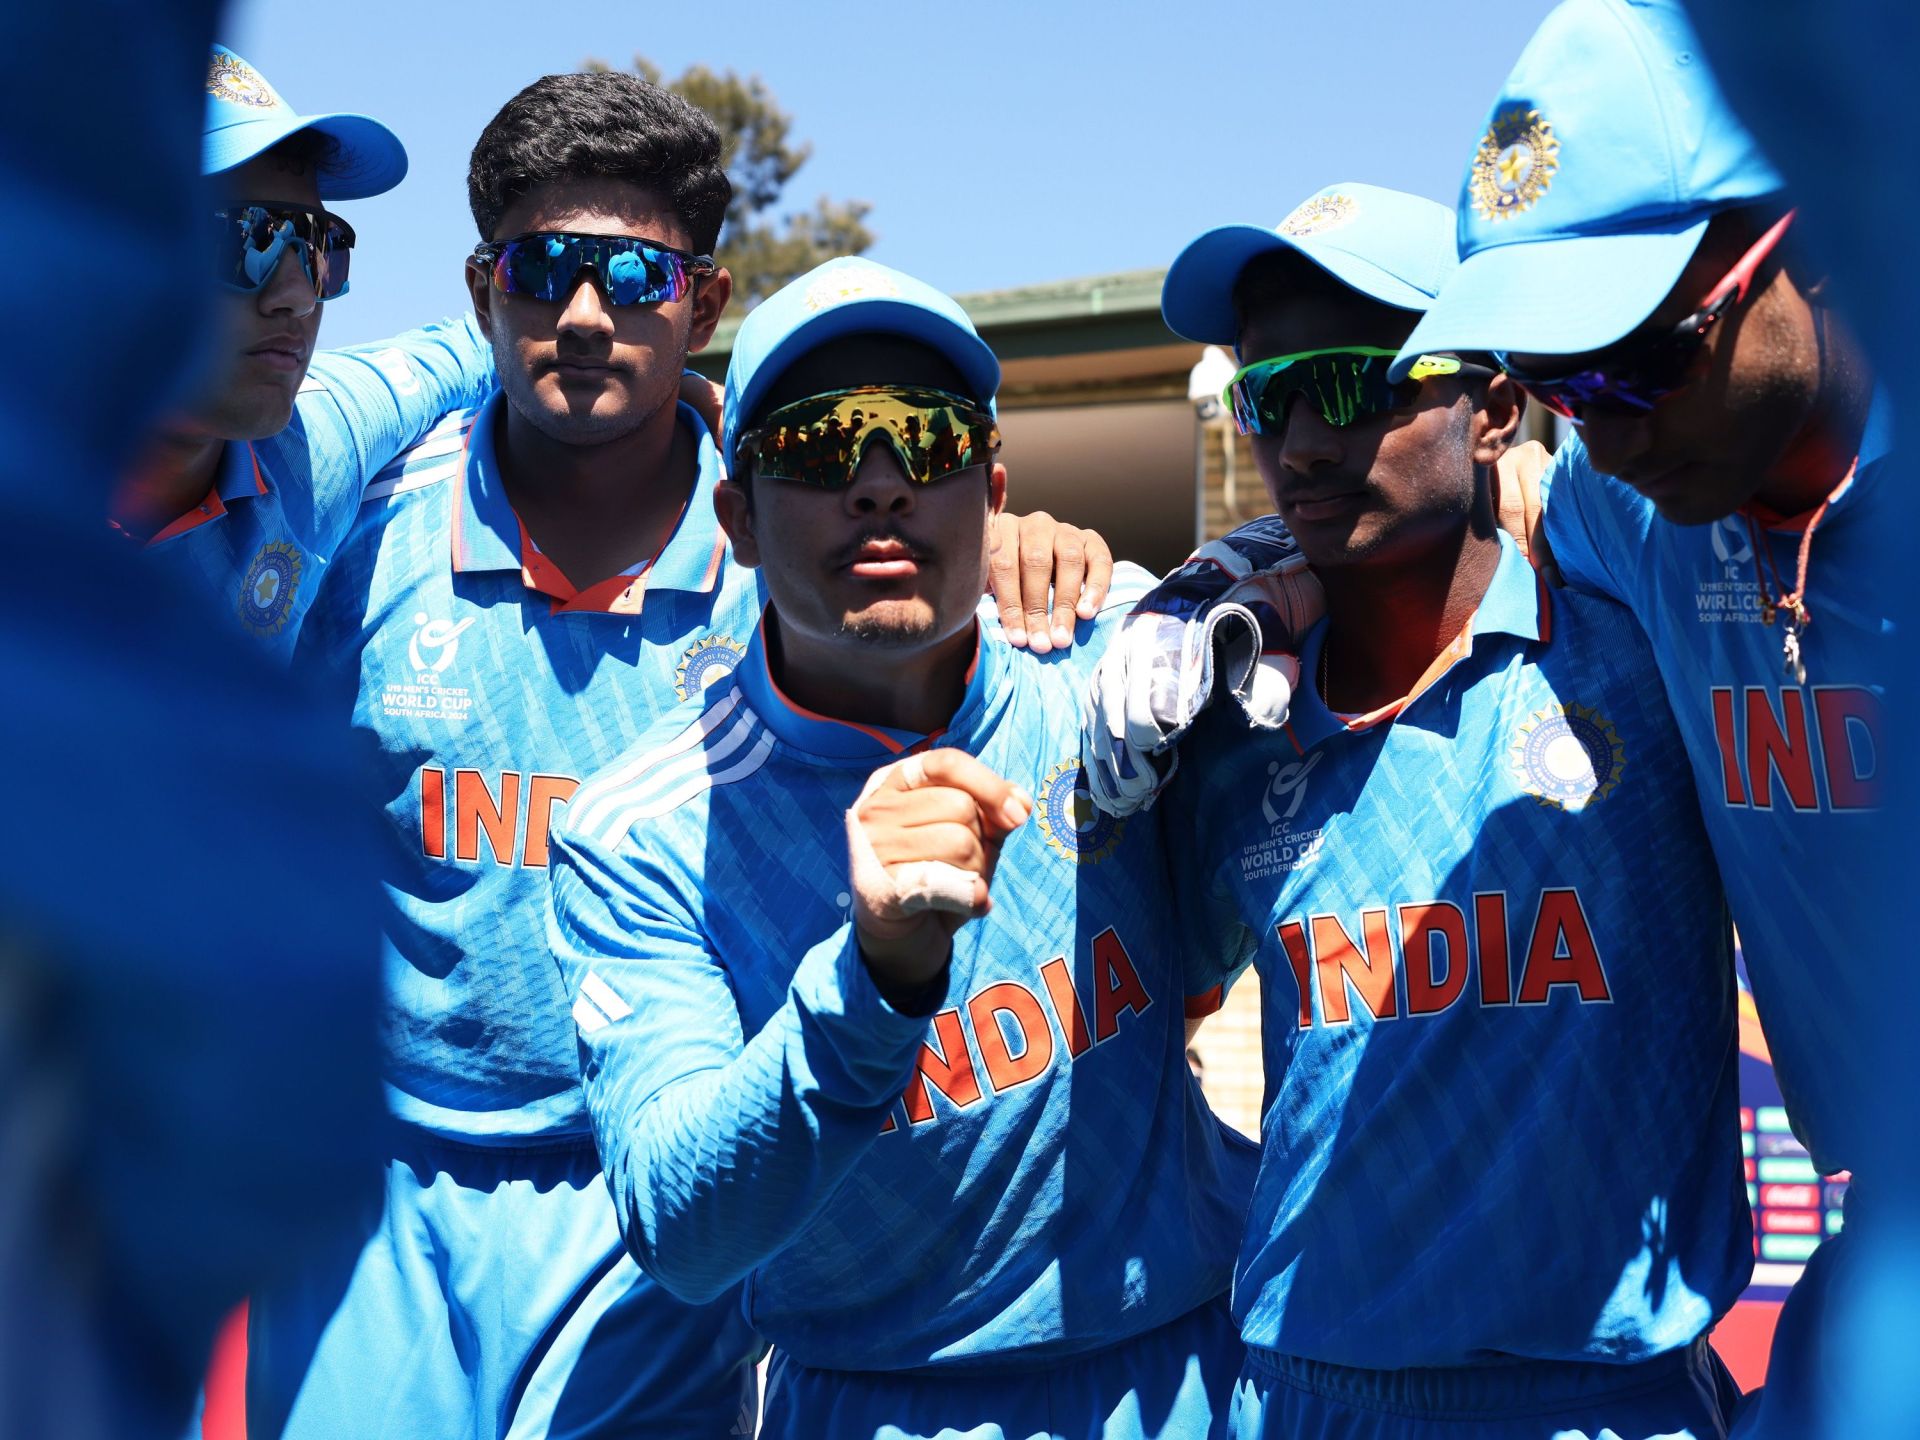 Aperçu : Inde contre Australie – Finale de la Coupe du monde de cricket des moins de 19 ans ICC |  Actualités sur le cricket